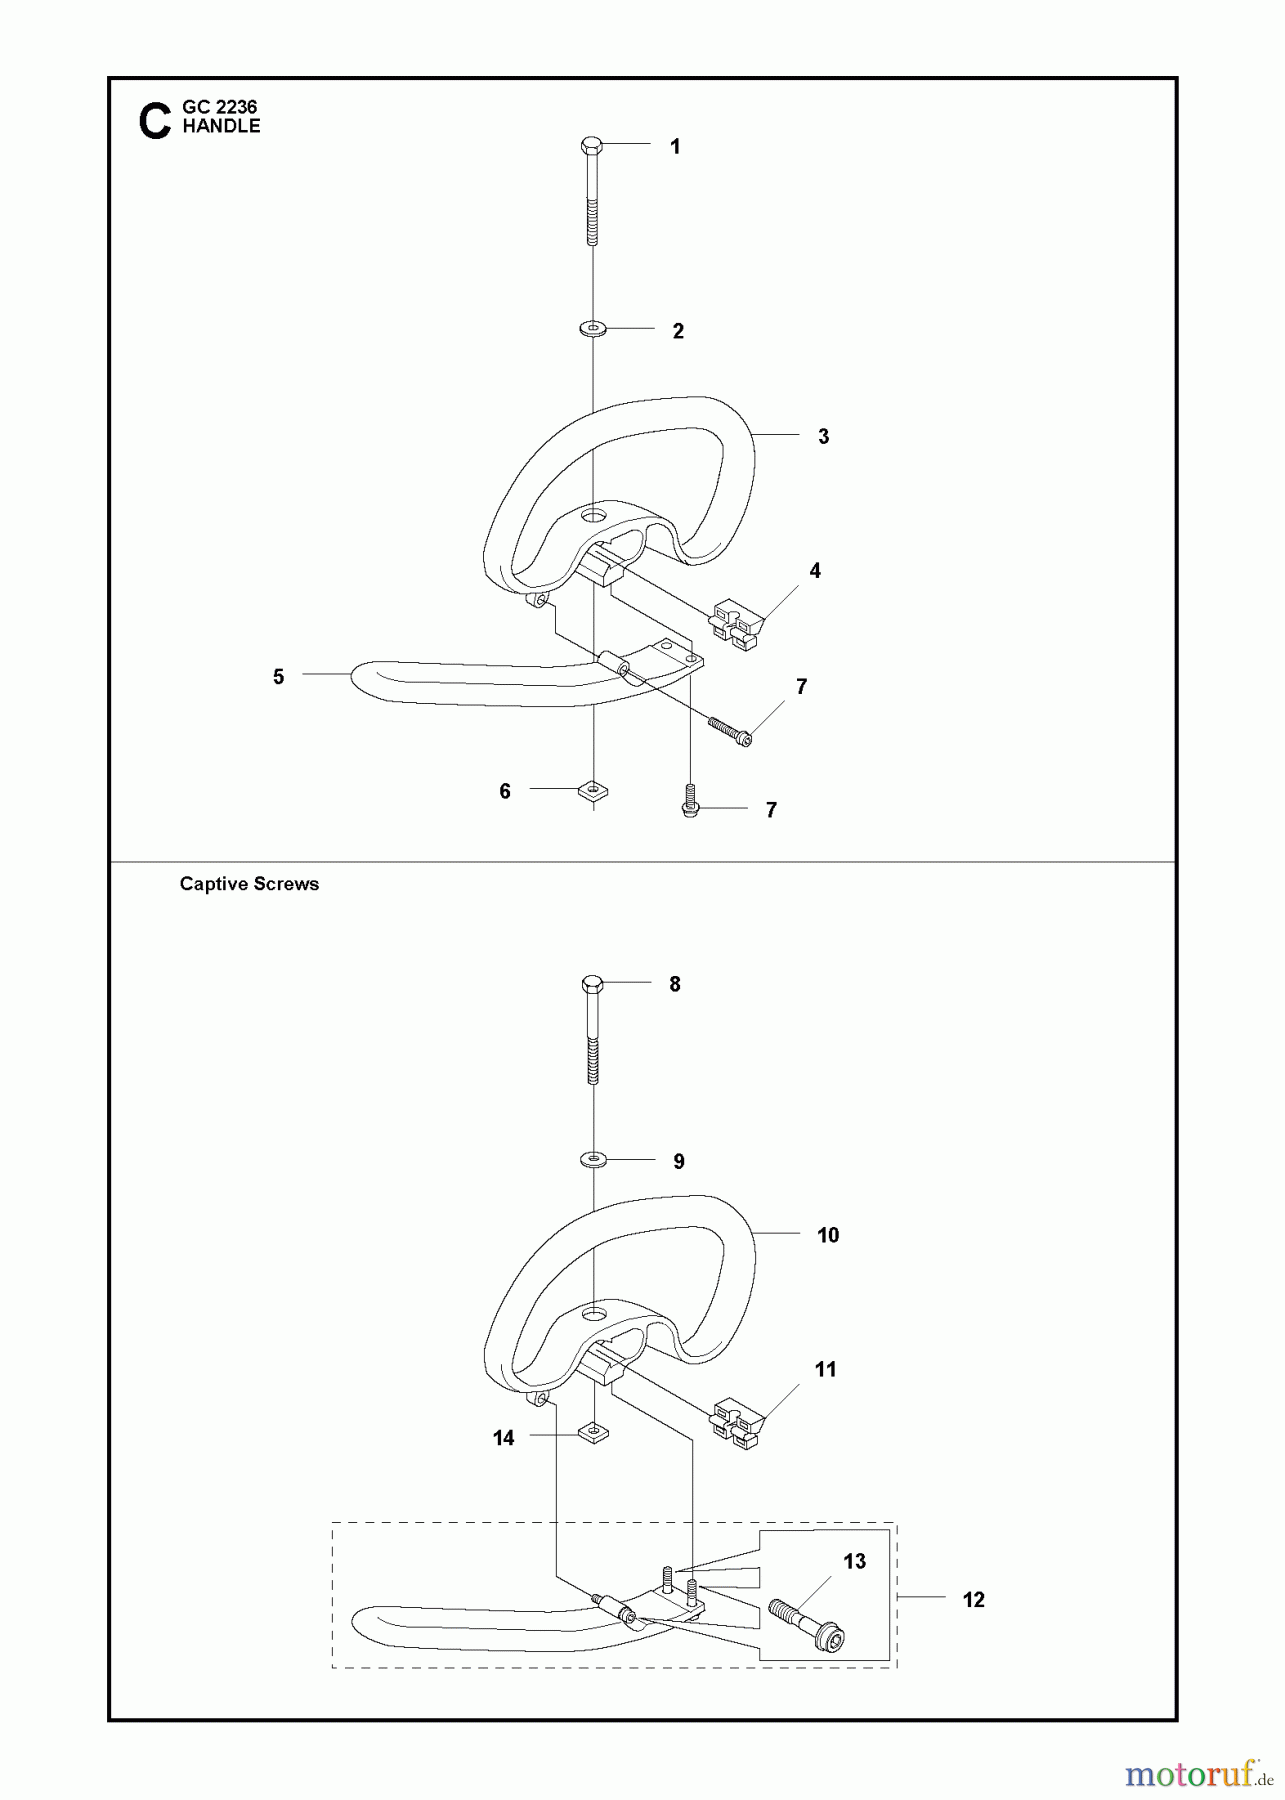  Jonsered Motorsensen, Trimmer GC2236 - Jonsered String/Brush Trimmer (2011-02) HANDLE